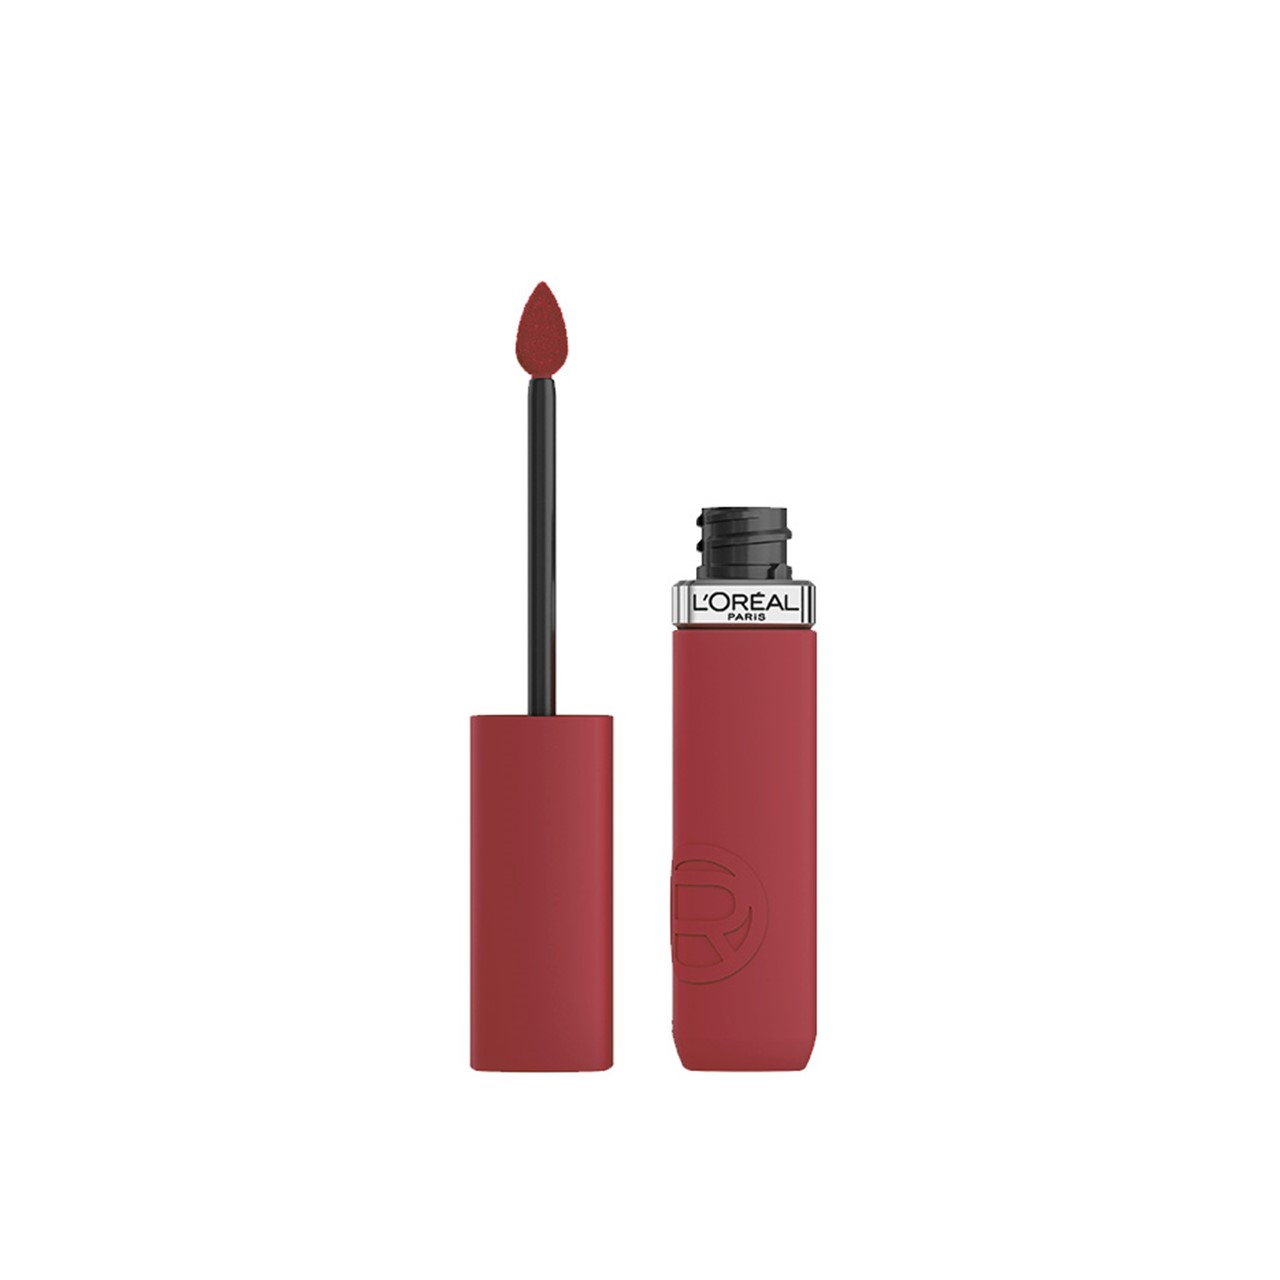 L'Oréal Paris Infallible Matte Resistance Liquid Lipstick 400 Spill The Tea 5ml (0.17 fl oz)